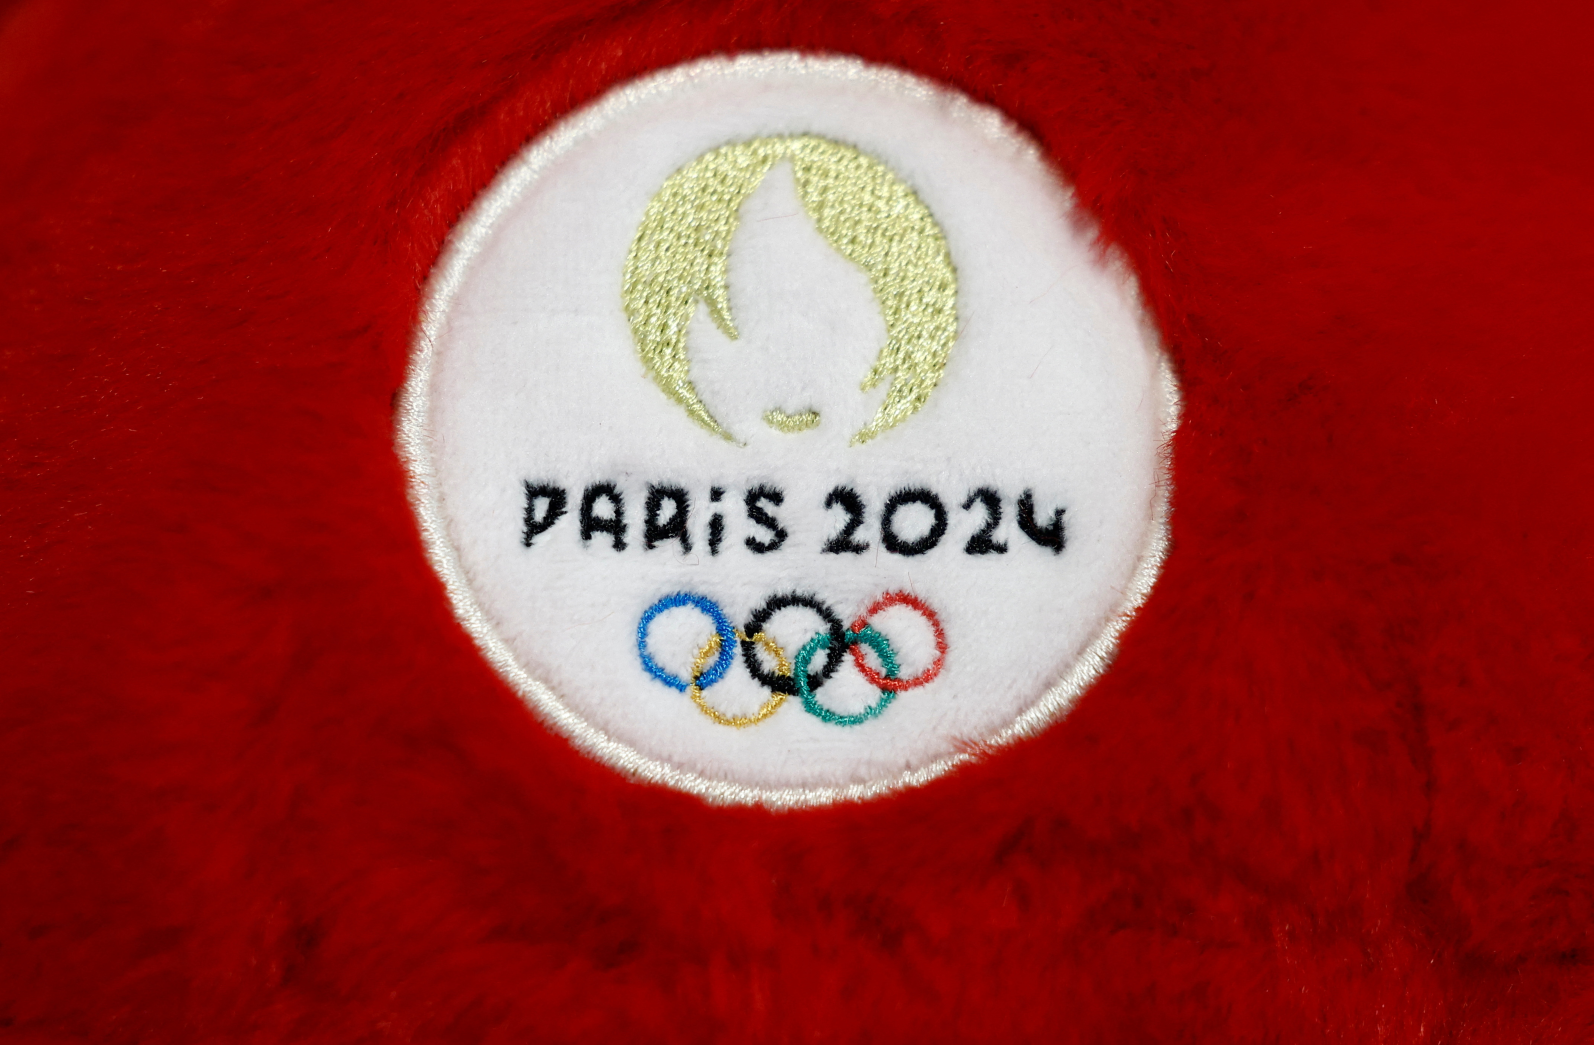 Paris 2024 lança slogan para Olimpíadas: Jogos para todos, olimpíadas